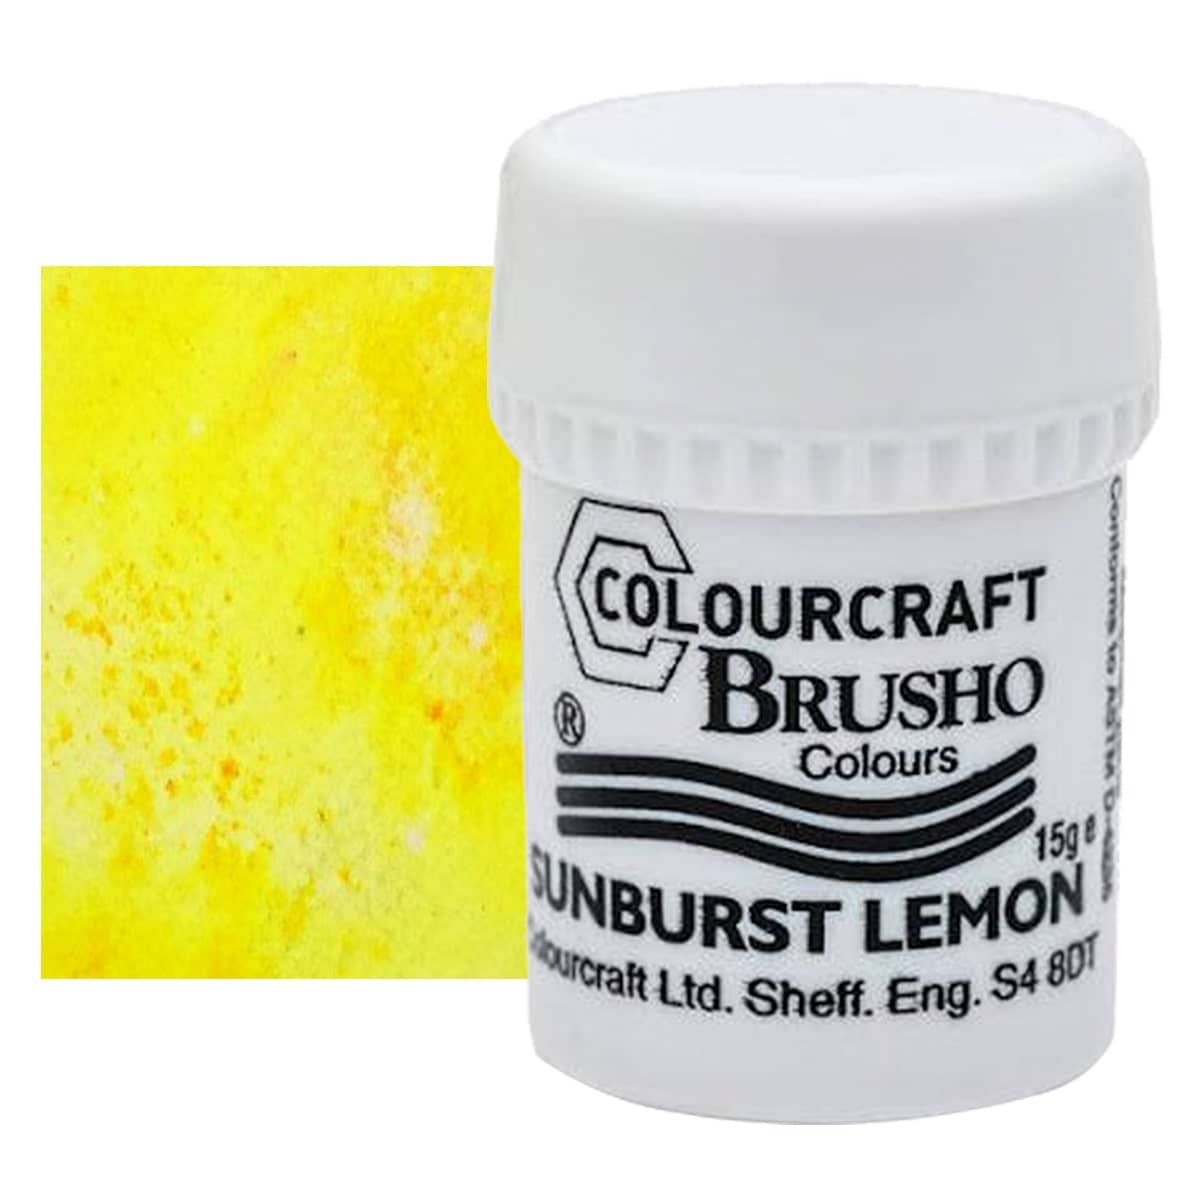 Brusho Crystal Colour, Sunburst Lemon, 15 grams
